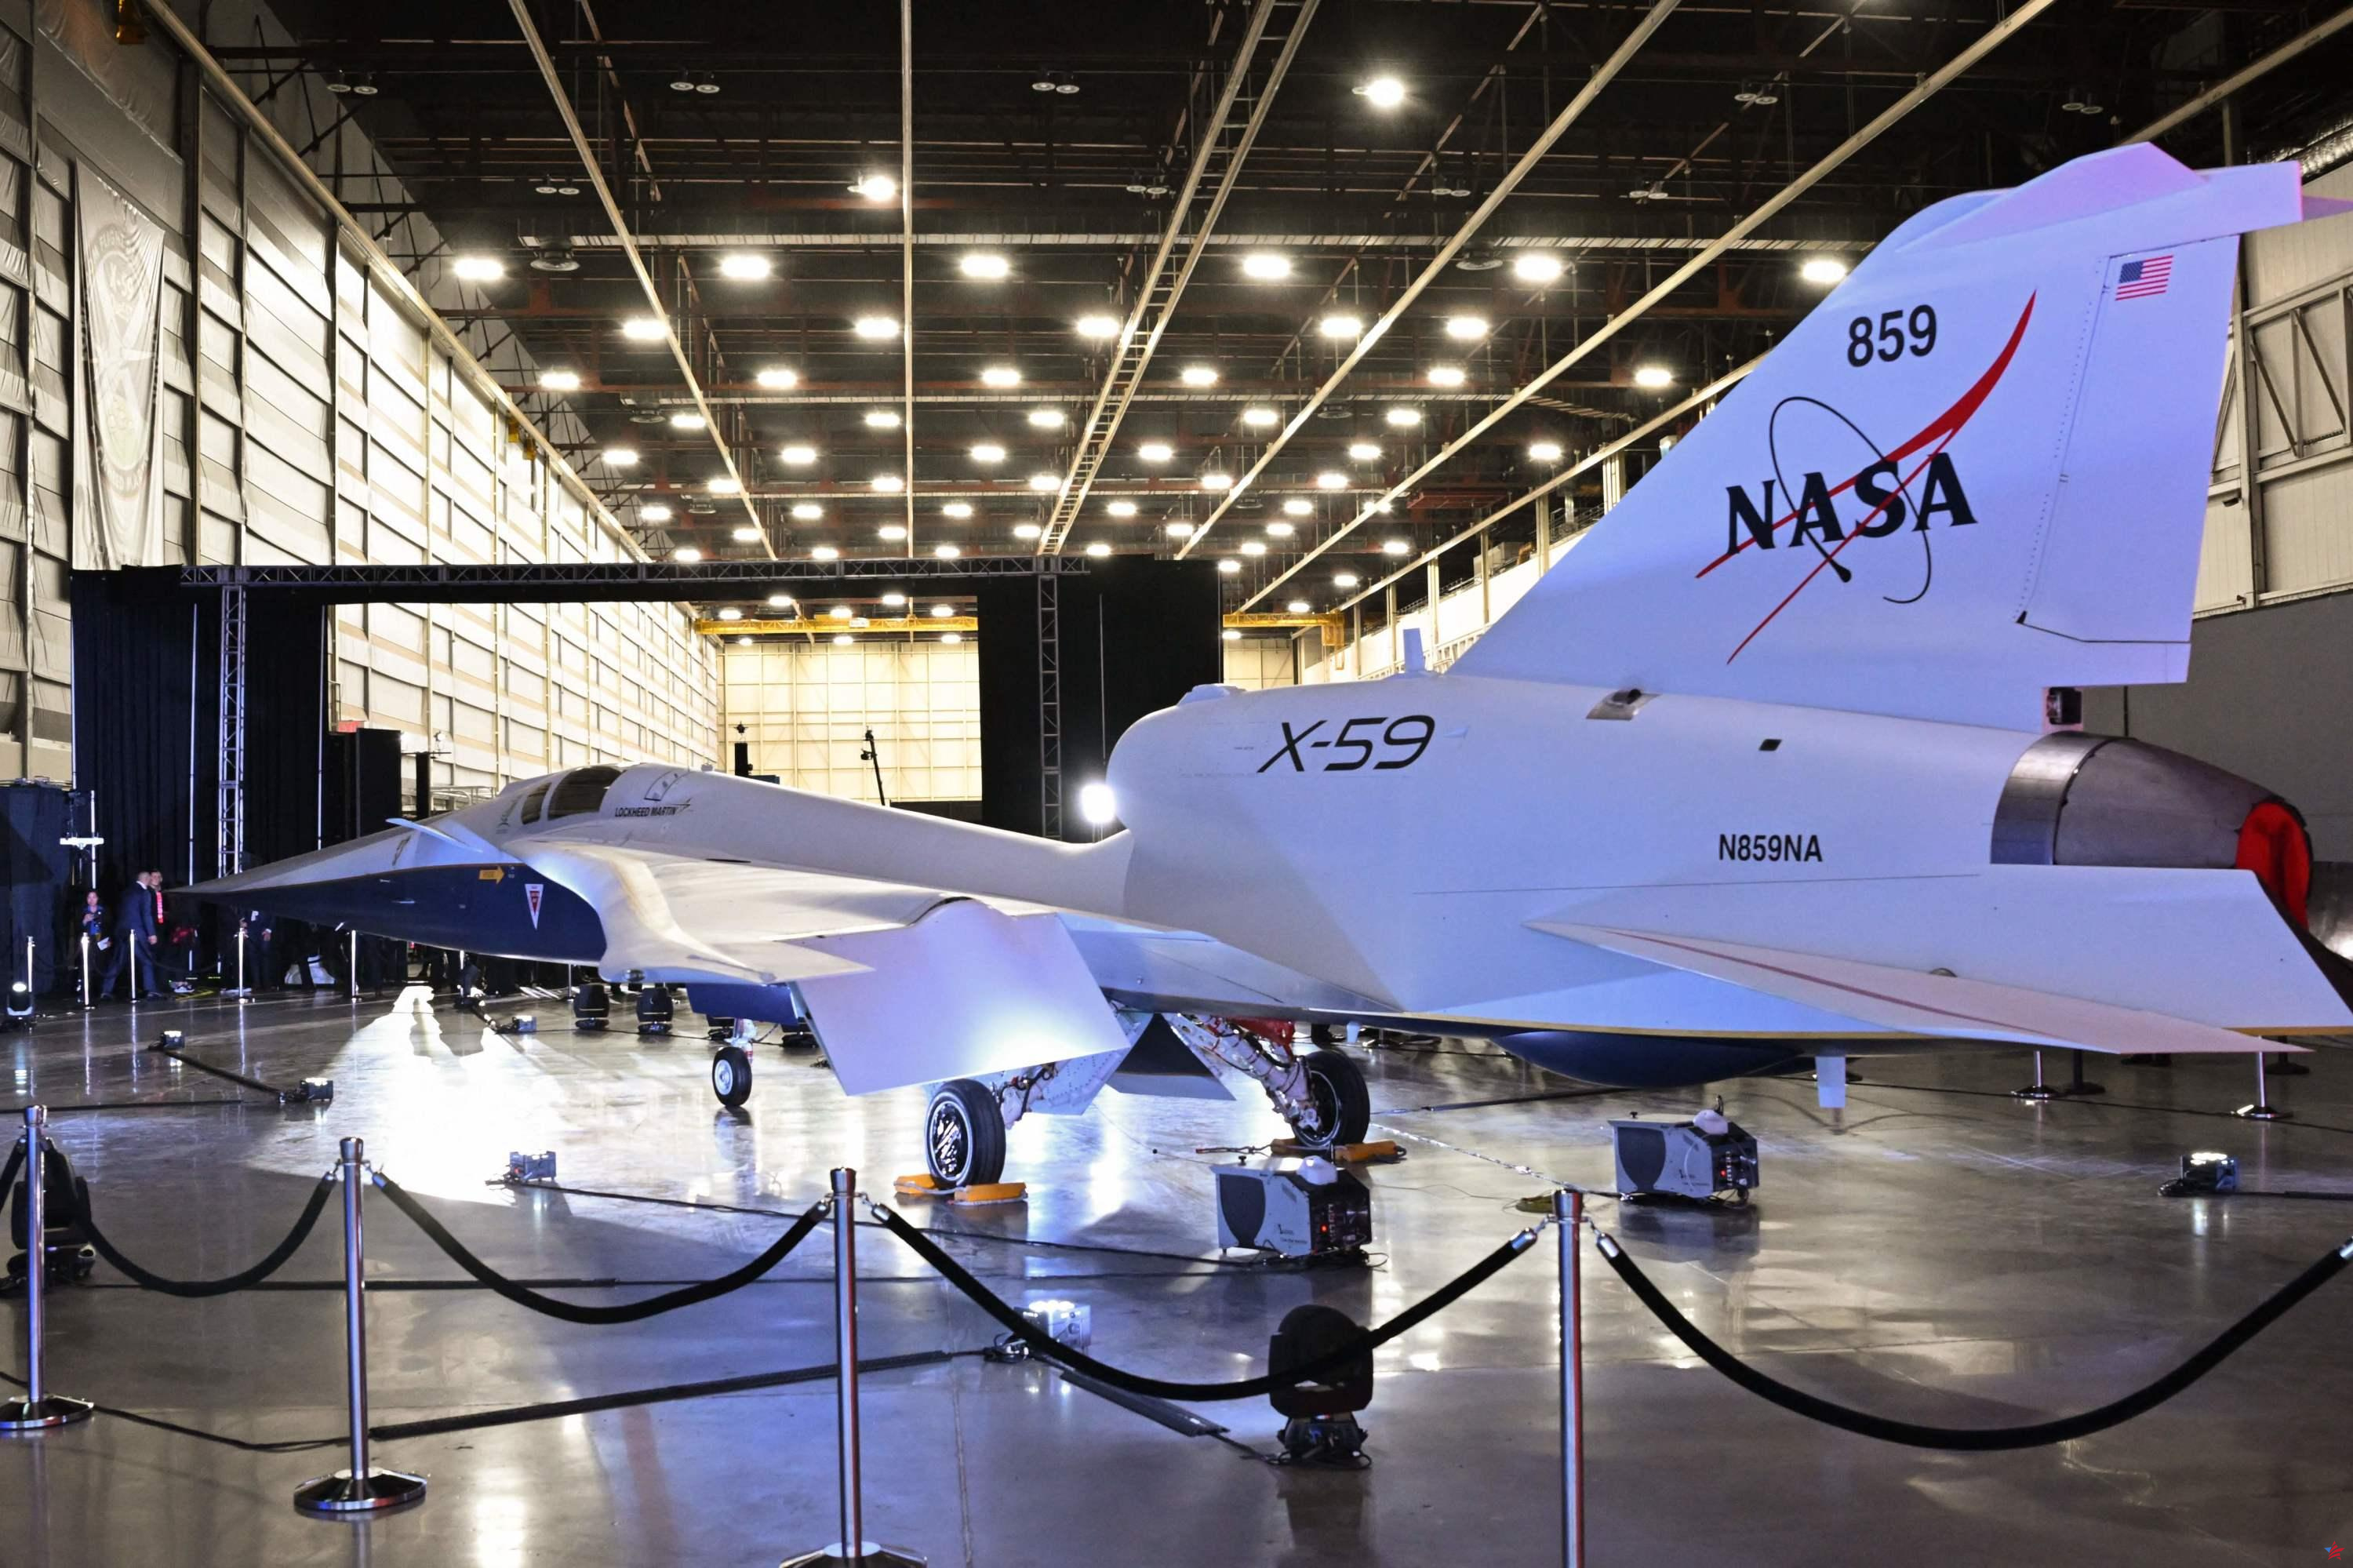 La NASA presenta el X-59, su avión supersónico silencioso